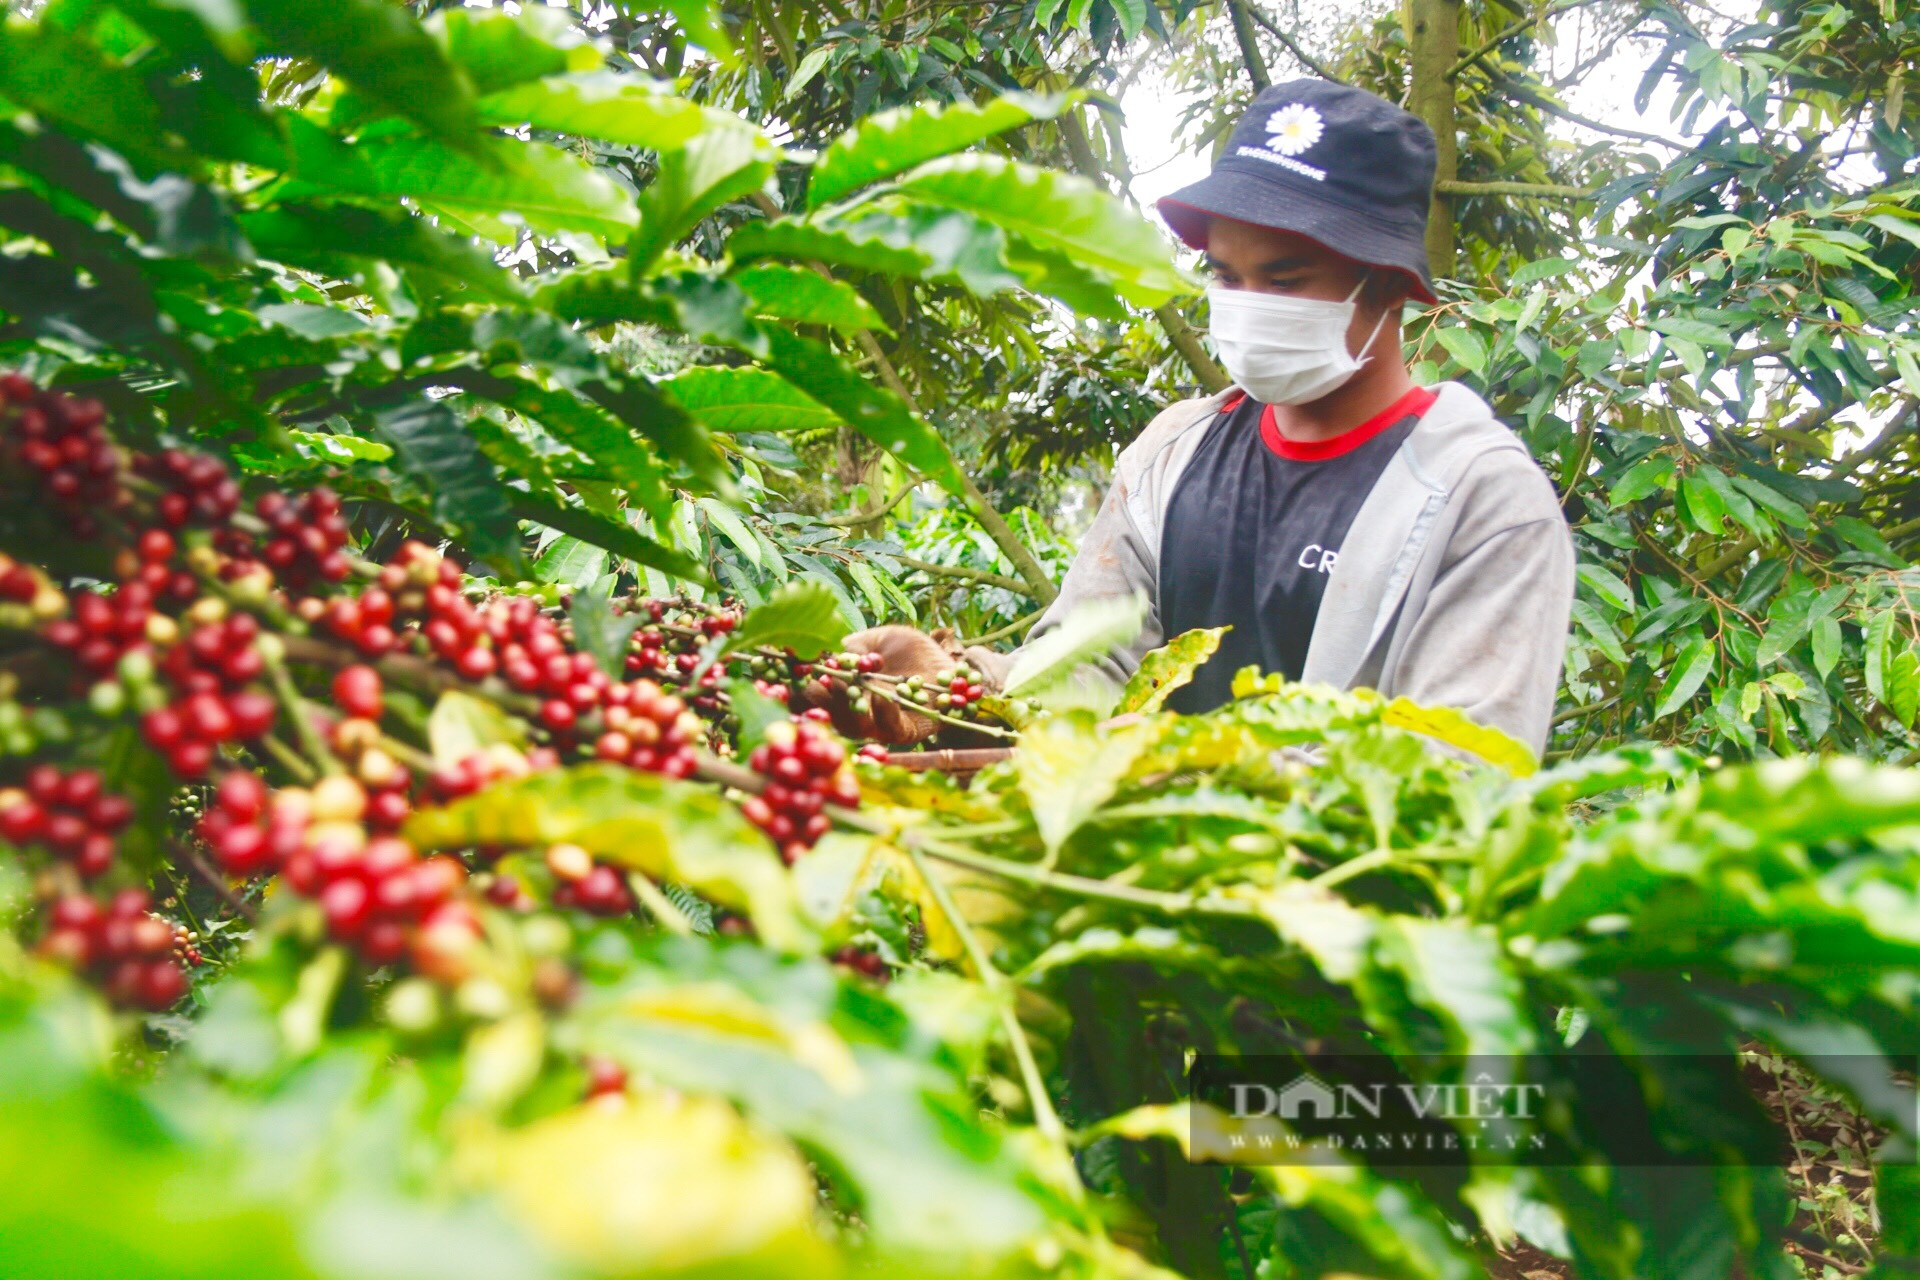 Mỹ bất ngờ tăng mua cà phê của Việt Nam, giá cà phê xuất khẩu tăng mạnh gia ca phe xuat khau ca phe 1656000958243967889973